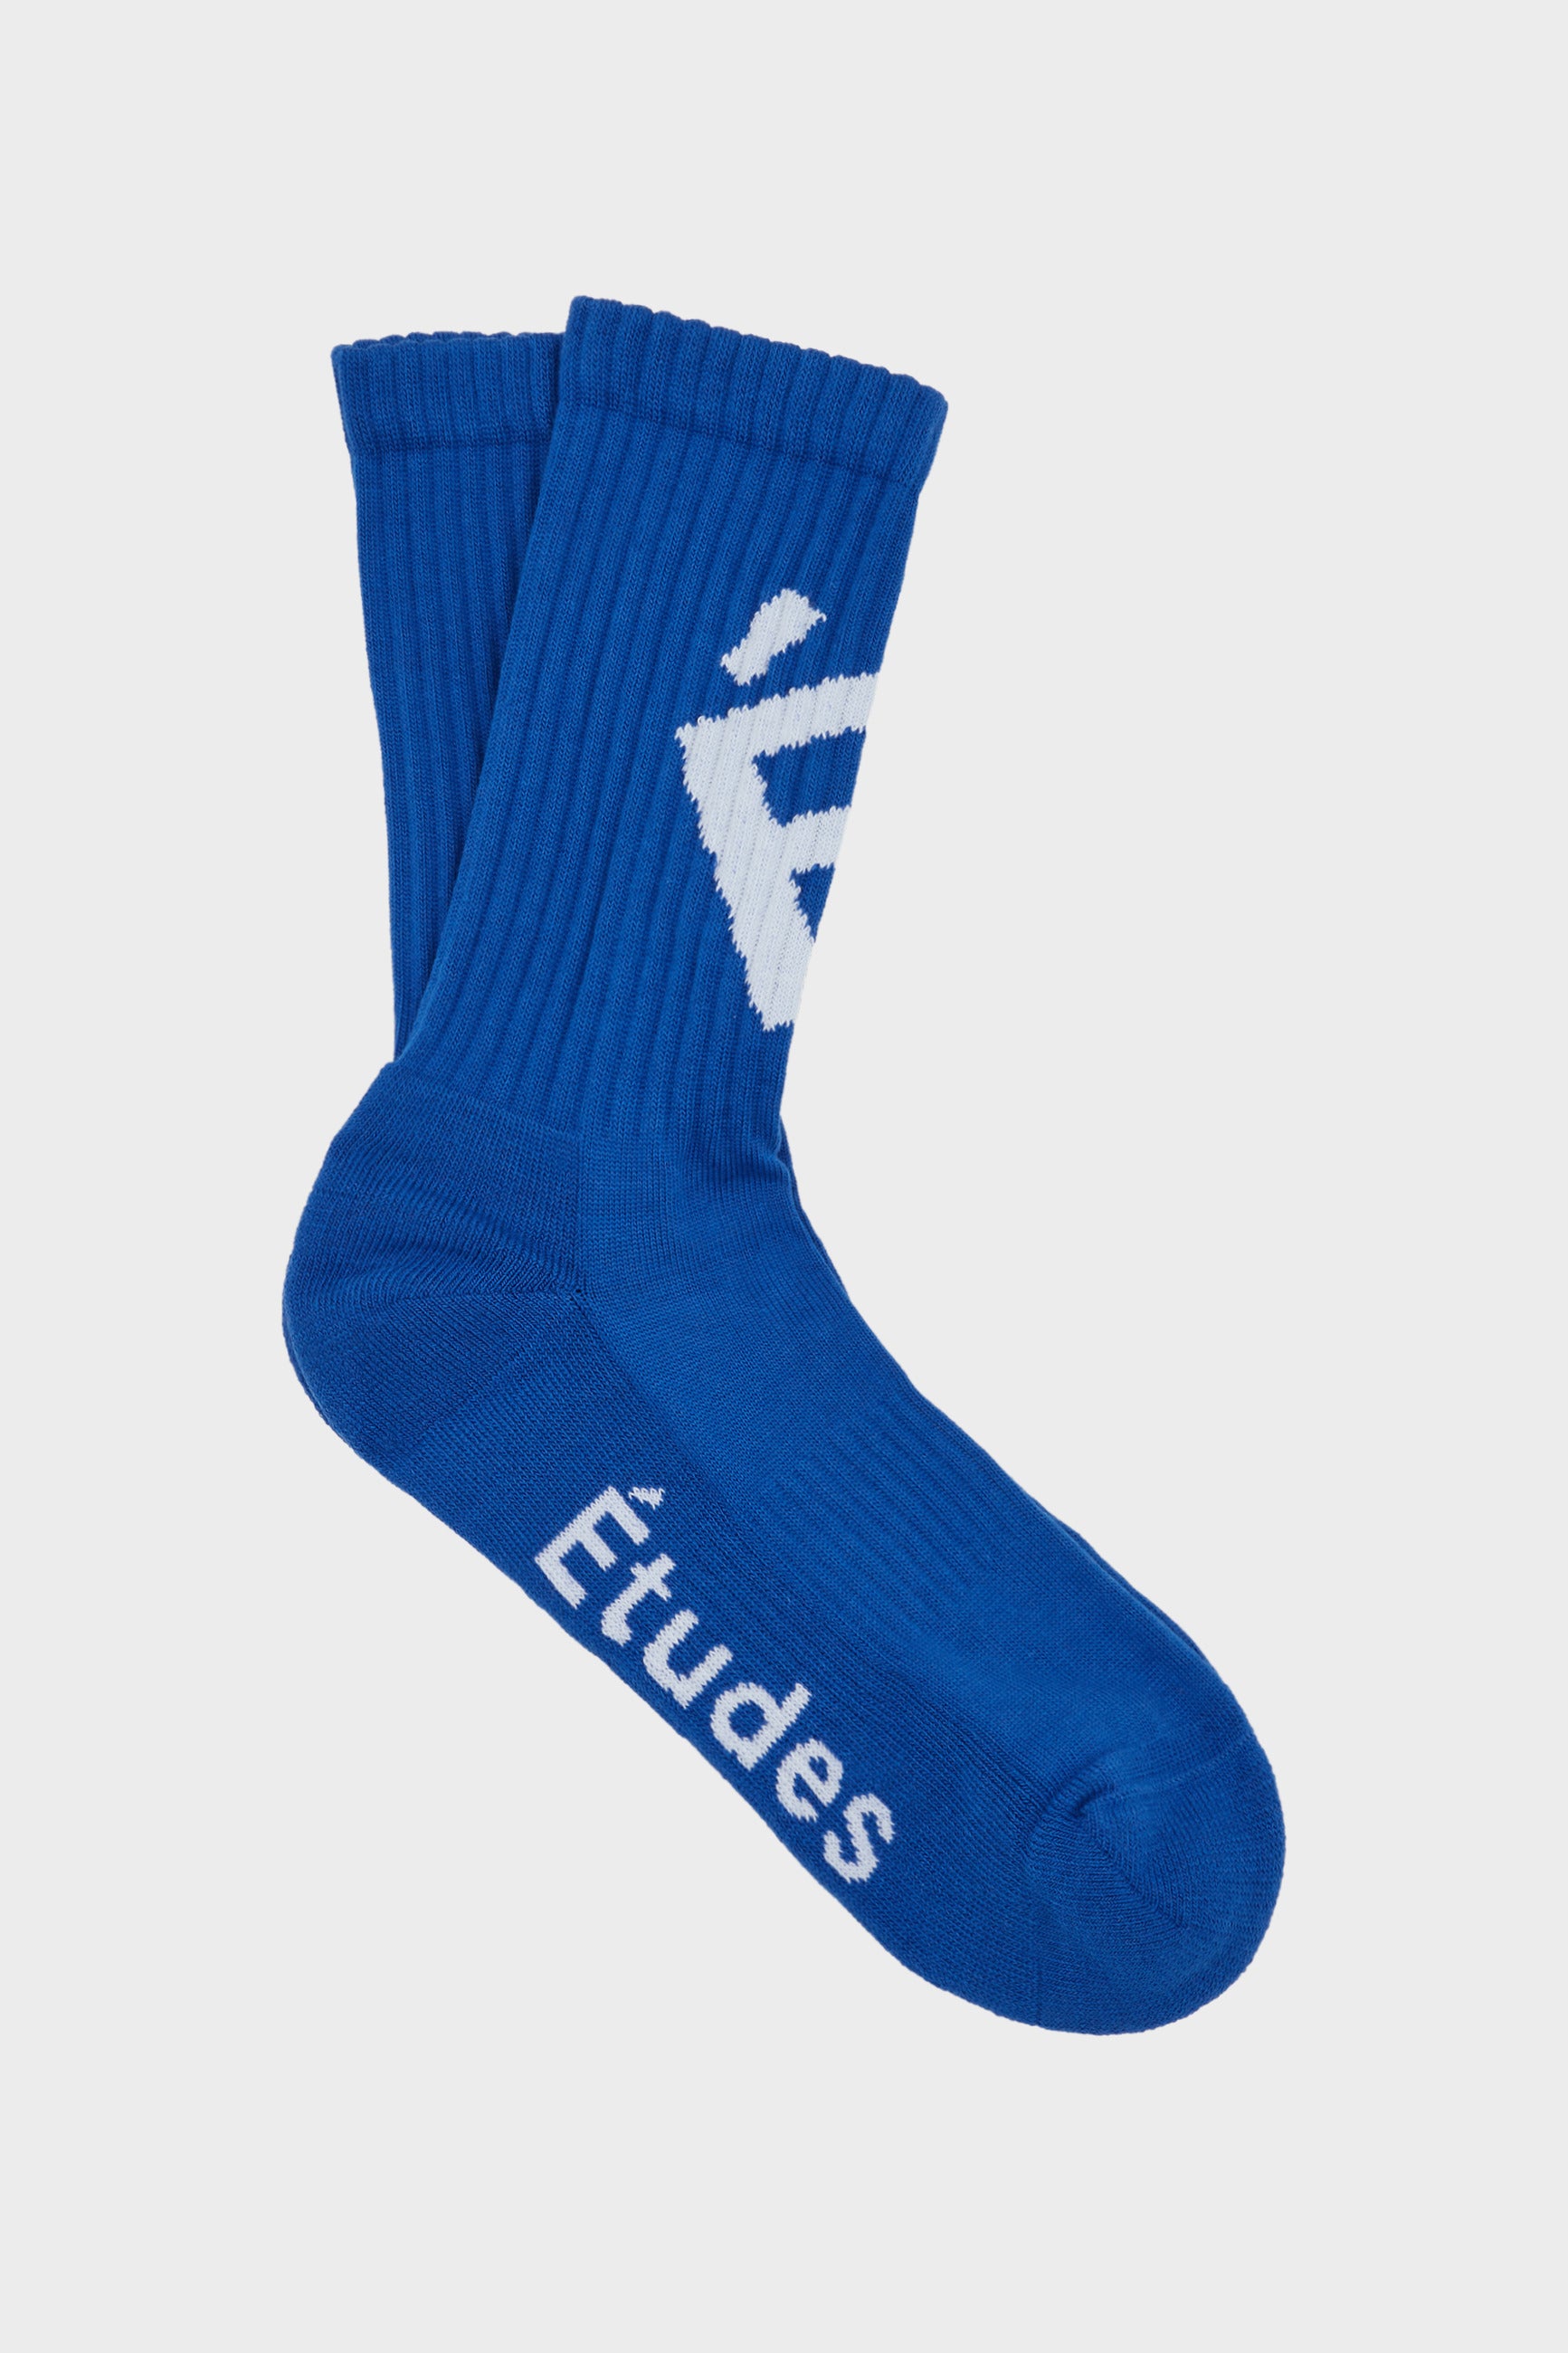 Études Member Accent Blue Socks